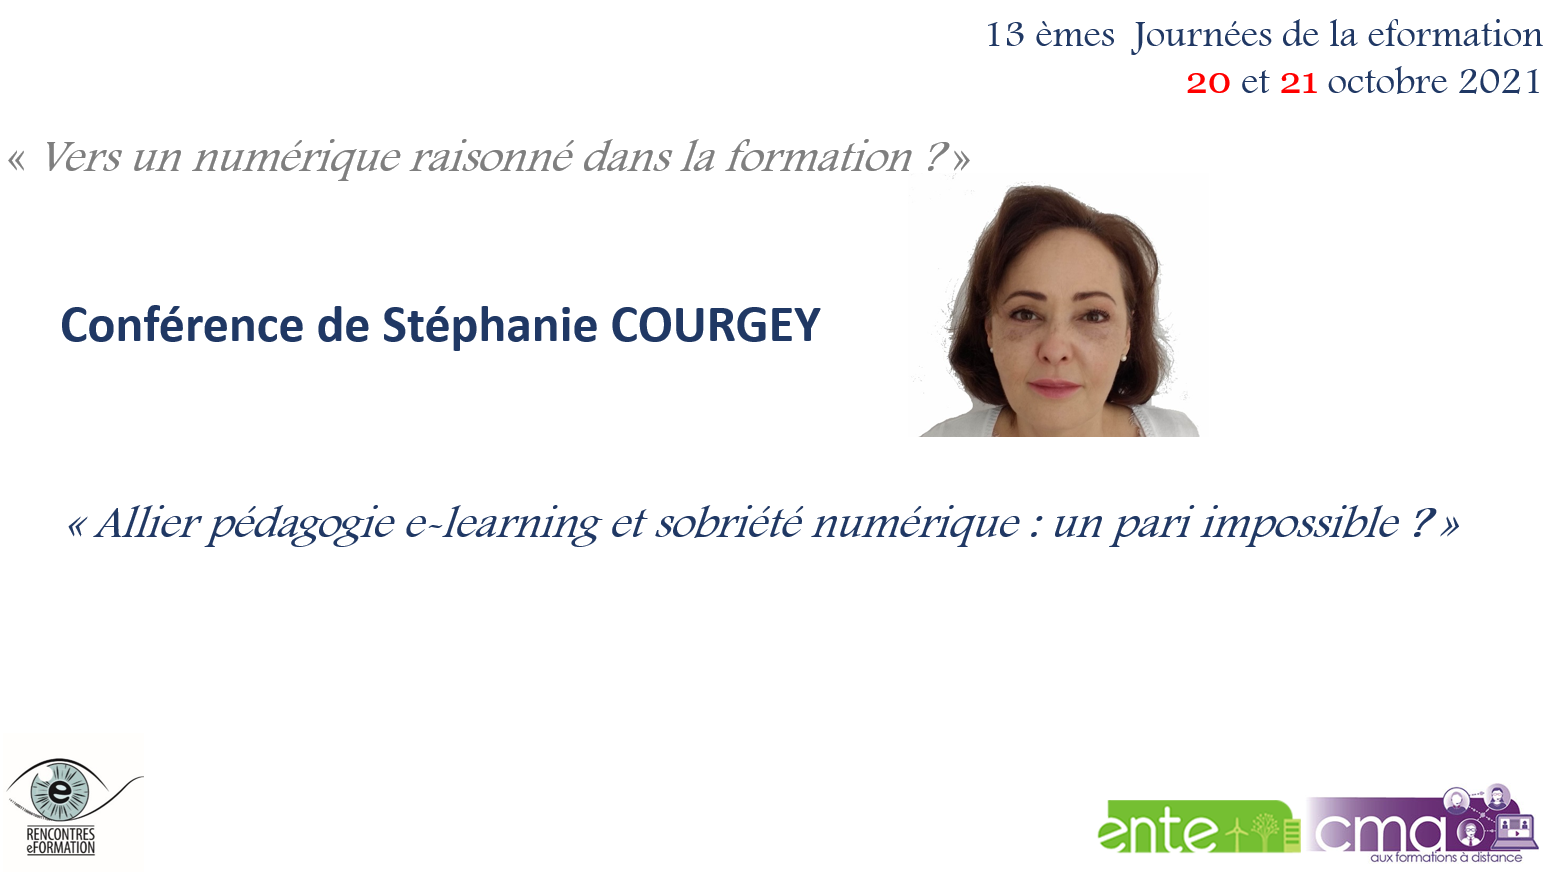 Conférence de Stéphanie Courgey "Allier pédagogie E-learning et sobriété numérique : un pari impossible?"